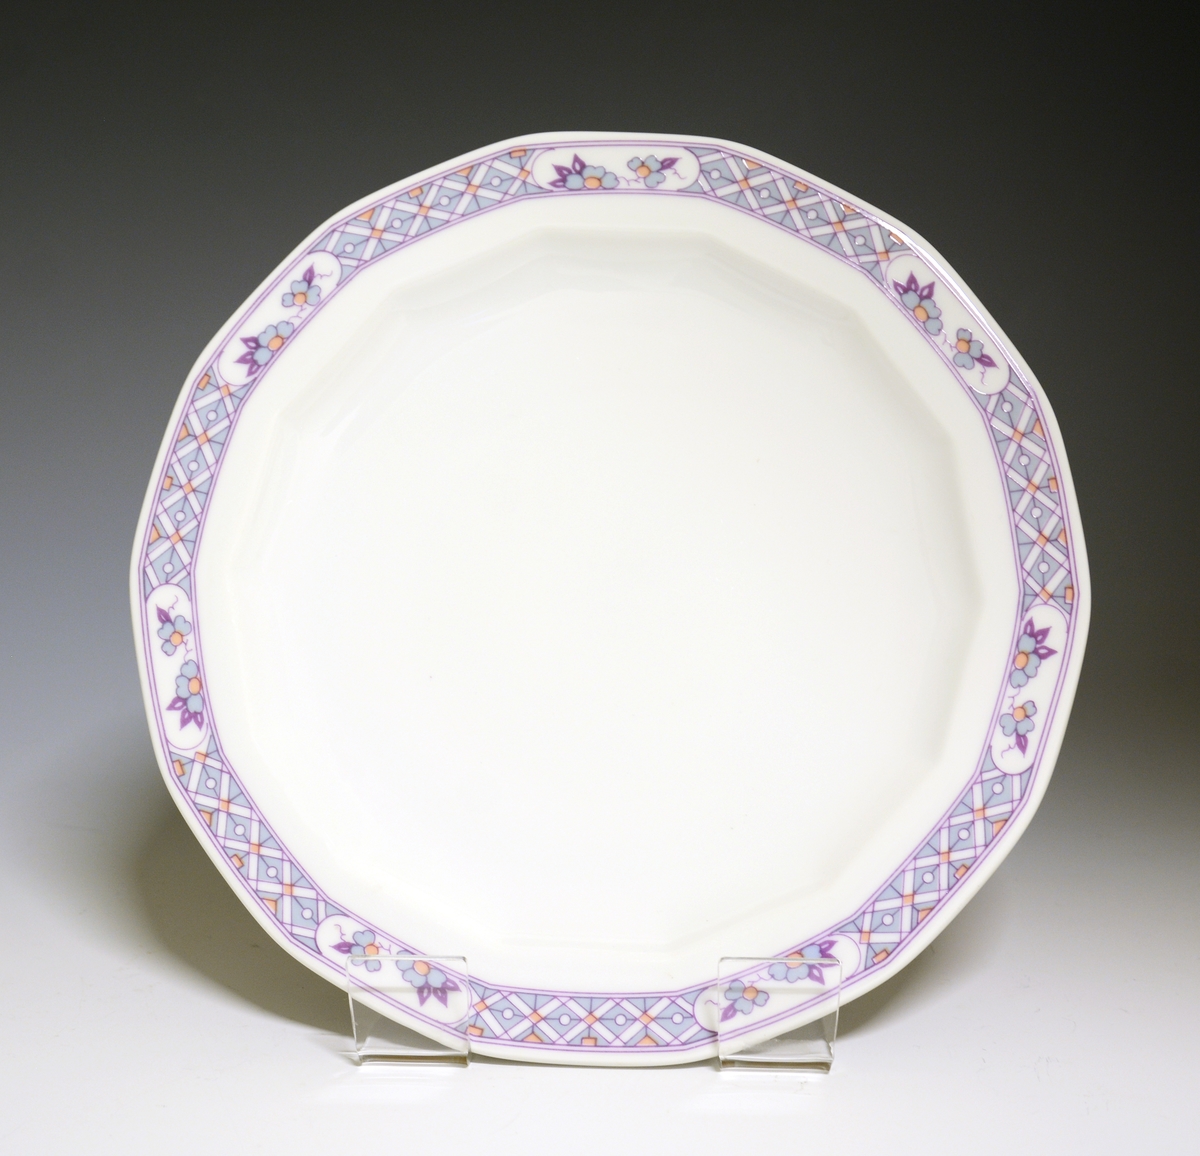 Mangekantet tallerken av porselen med hvit glasur. Dekorert med en bord ytterst på fanen med blomster og geometriske former. 
Modell: Octavia, i produksjon fra 1977
Dekor: Innkjøpt dekor, ikke av Grete Rønning.